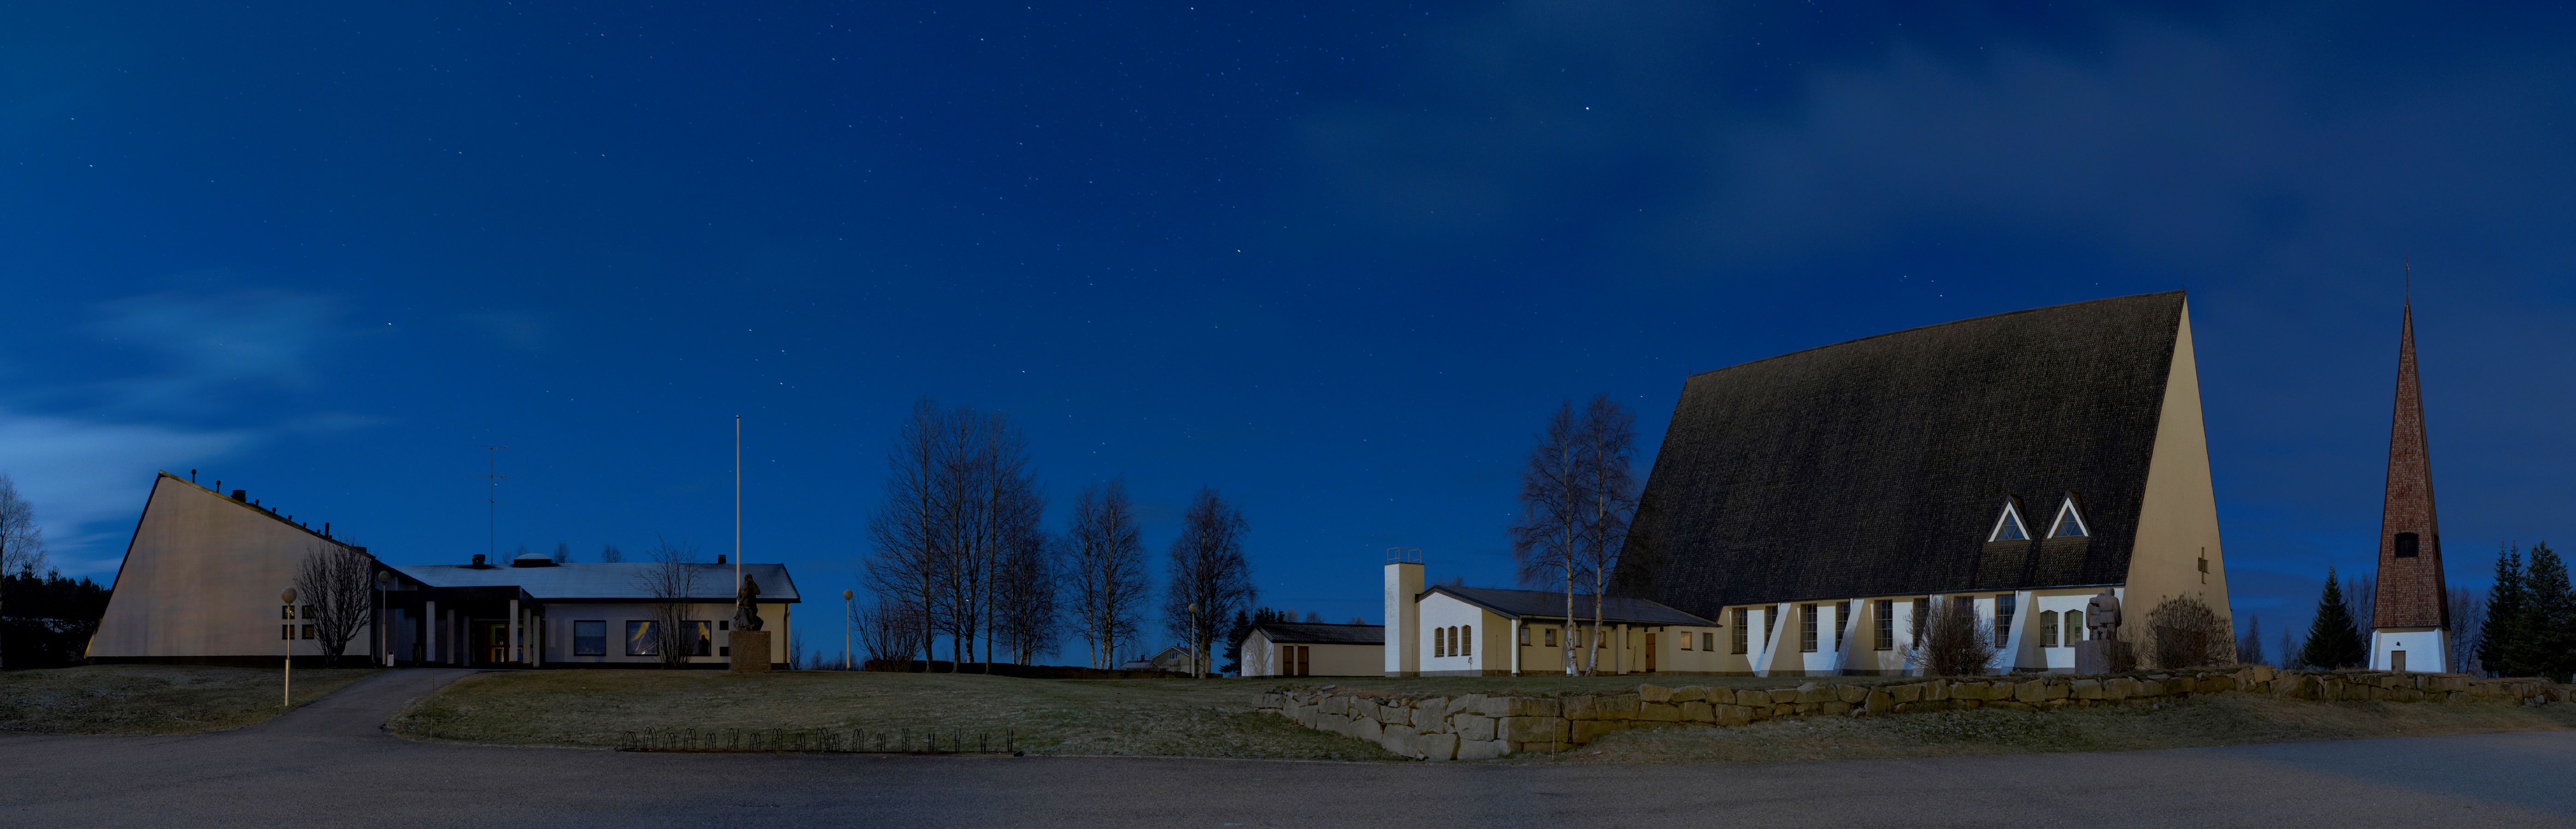 Sallan kirkko kuutamossa. Kuva Antti Kettunen.